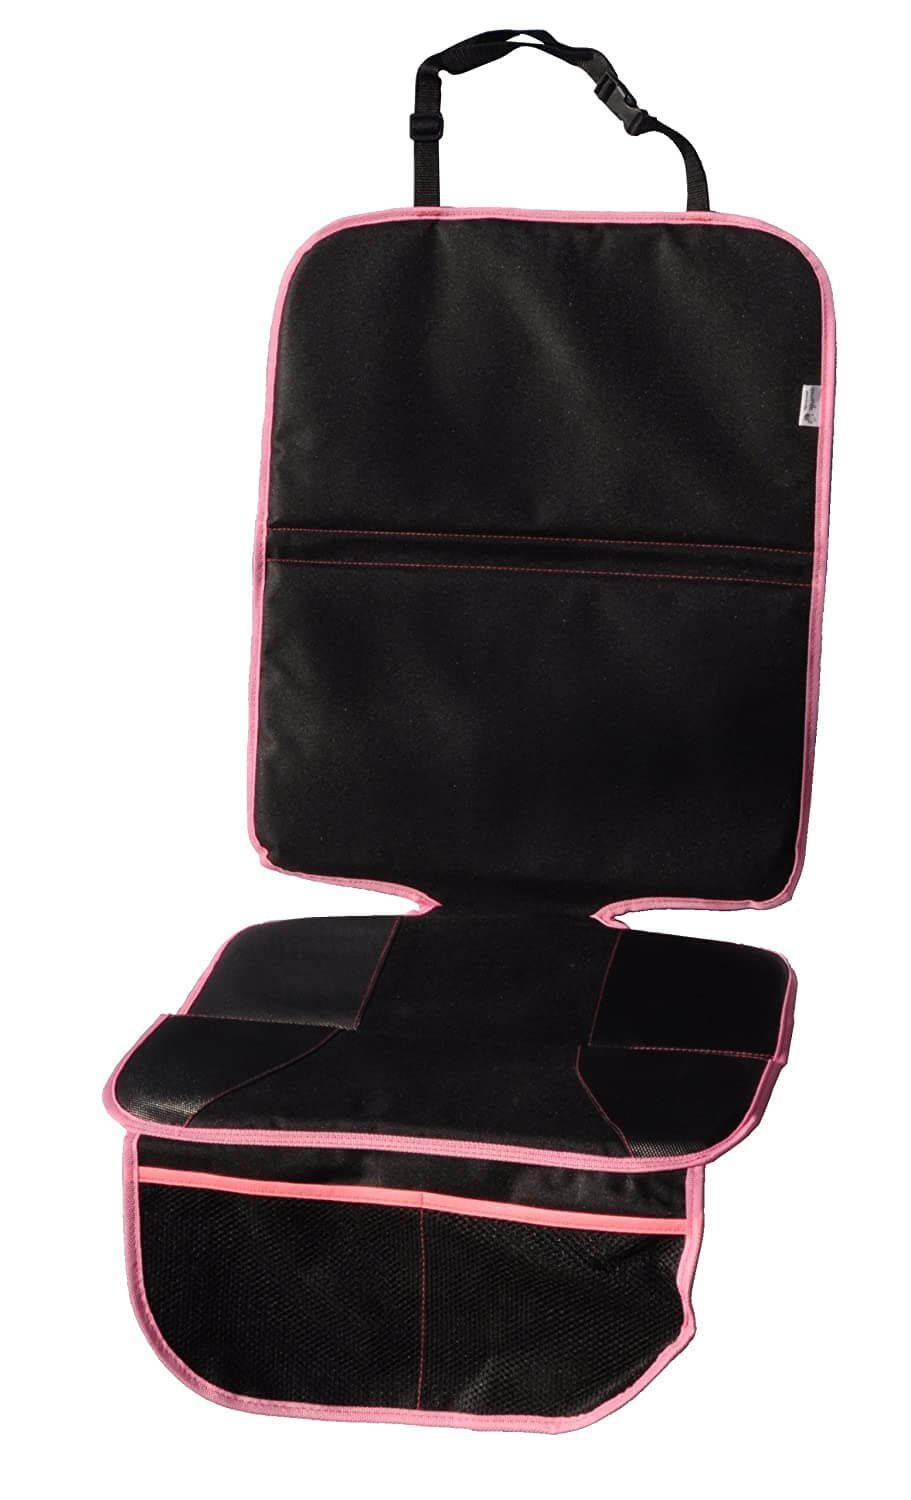 Wumbi Pink Autokindersitz leicht zu Sitzschoner, Sitzschutz Sitzbezug Wasserabweisend säubern Kindersitzunterlage